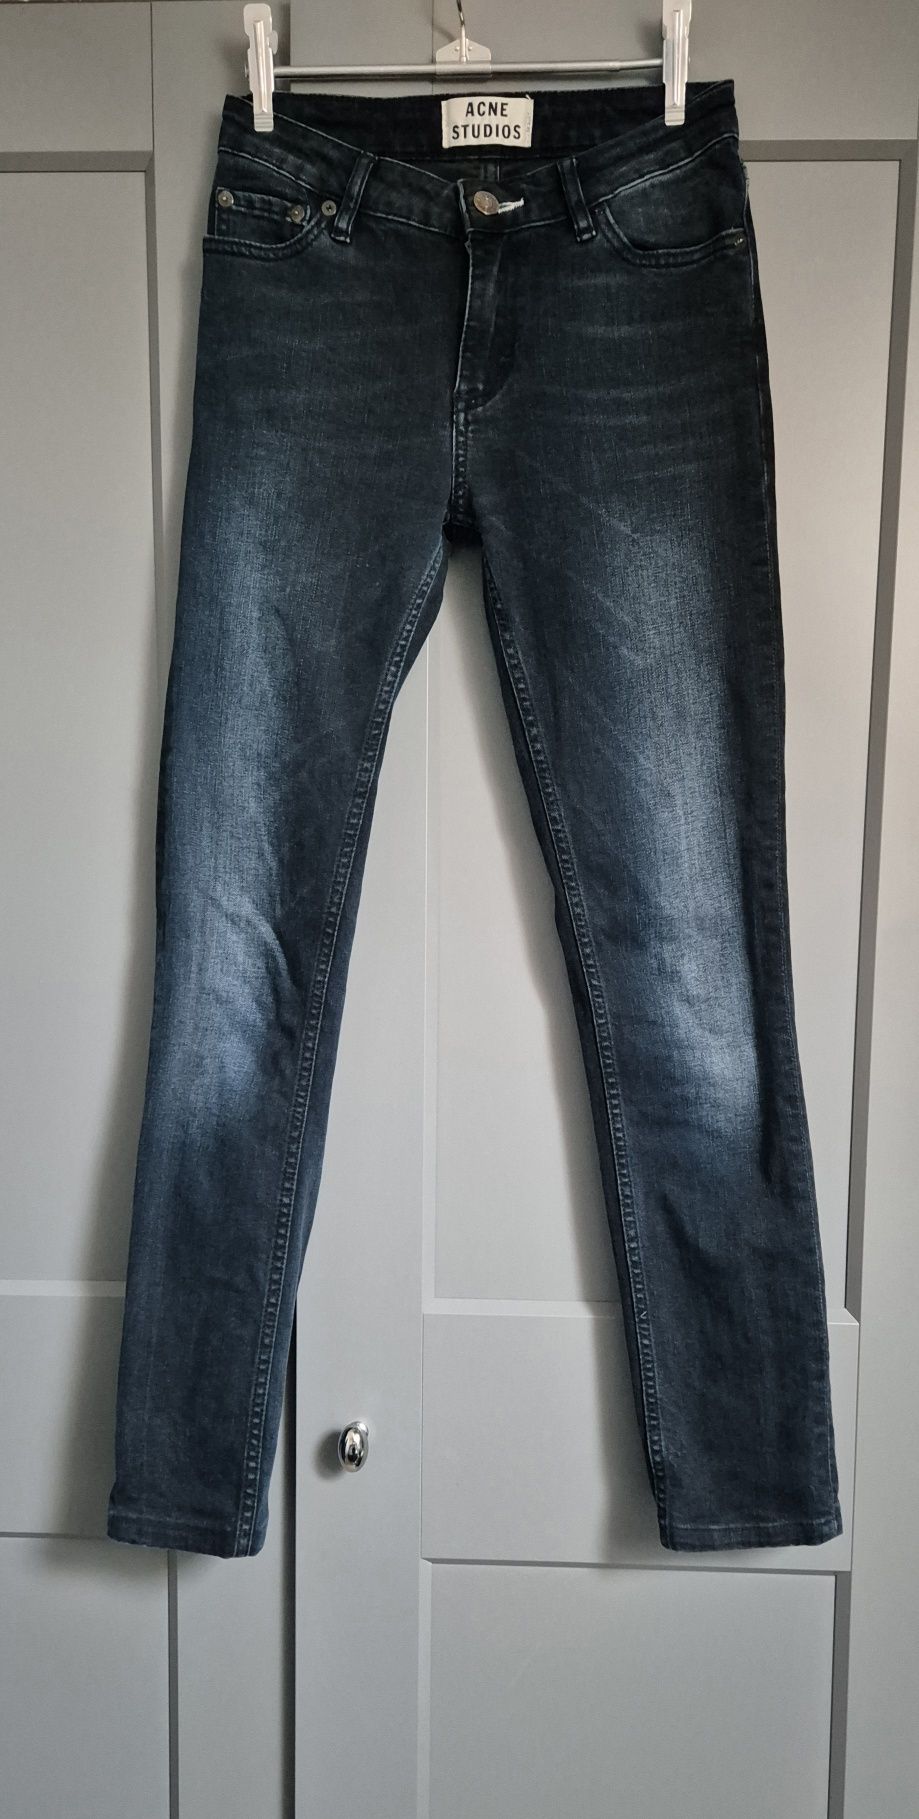 Acne studios jeansy spodnie rurki skinny 25/32 XS s